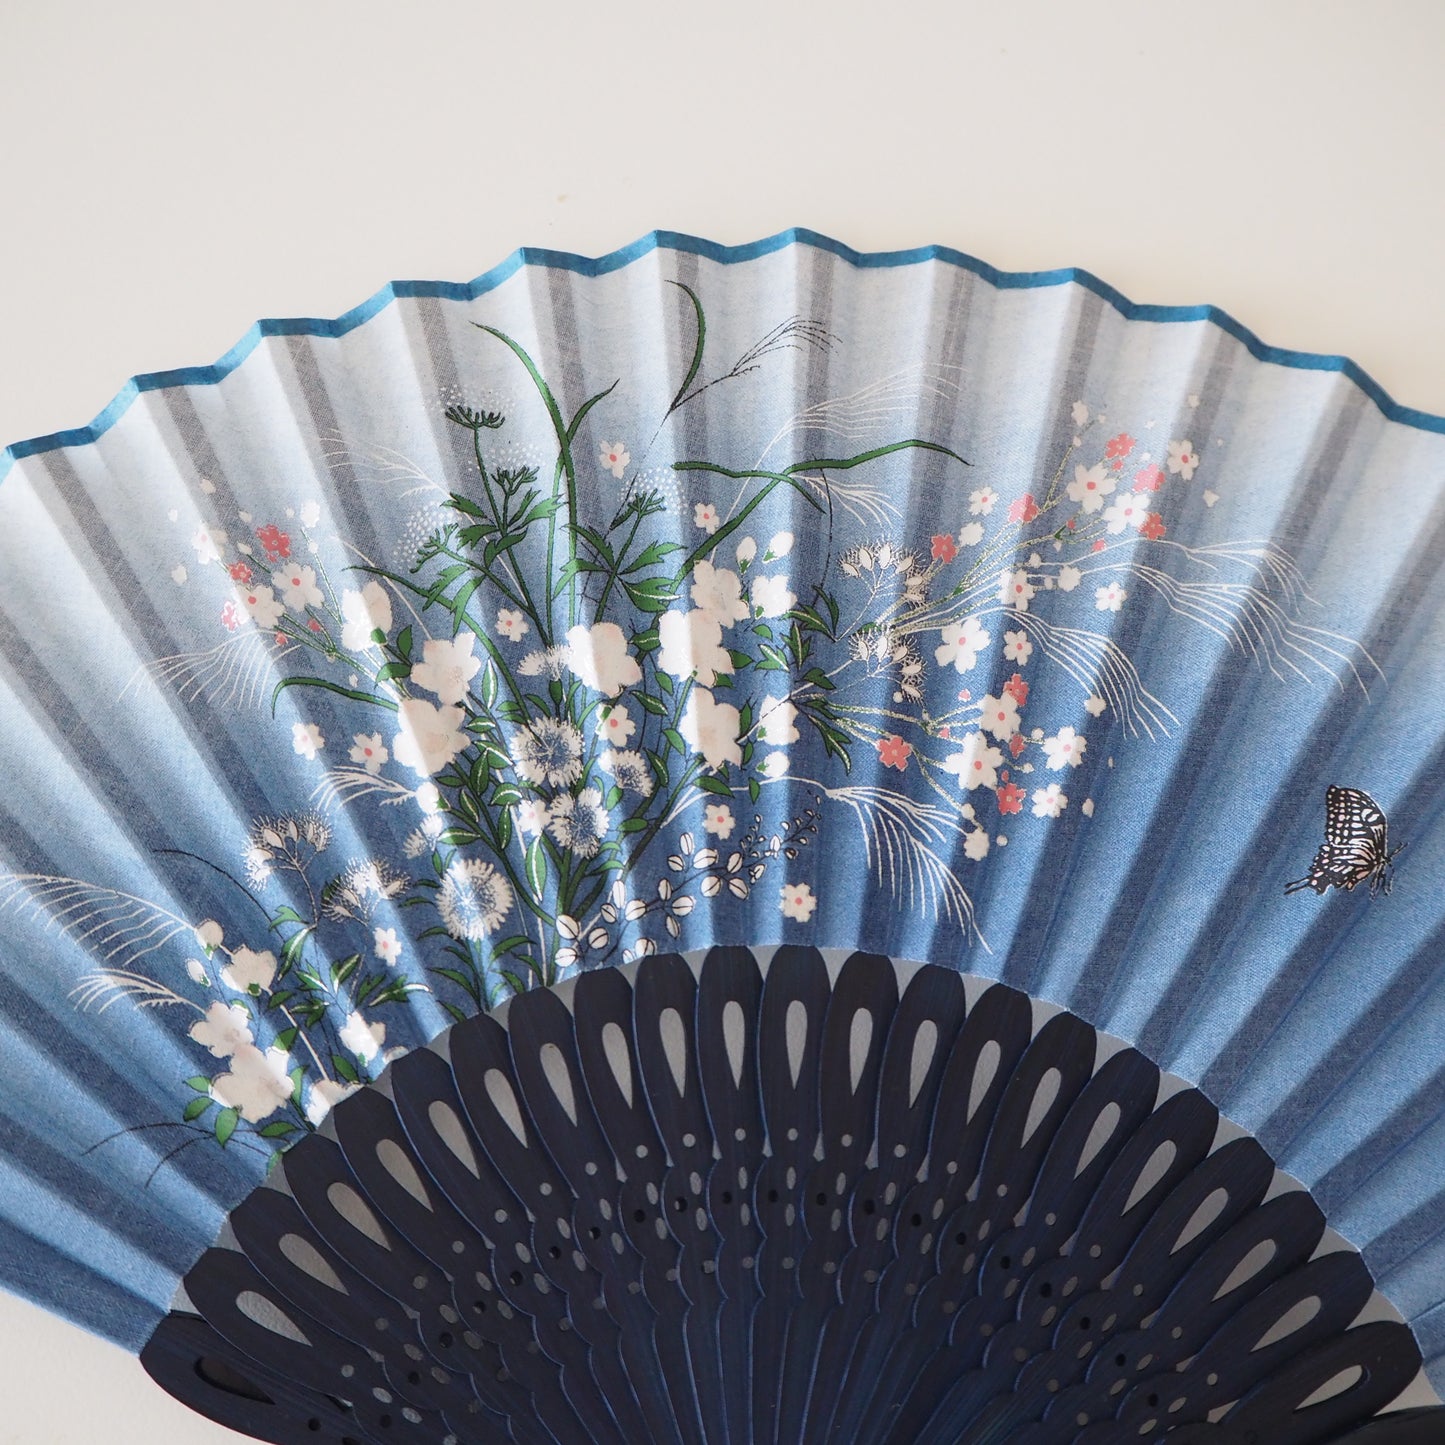 Folding Fan - Blue fan with Floral print